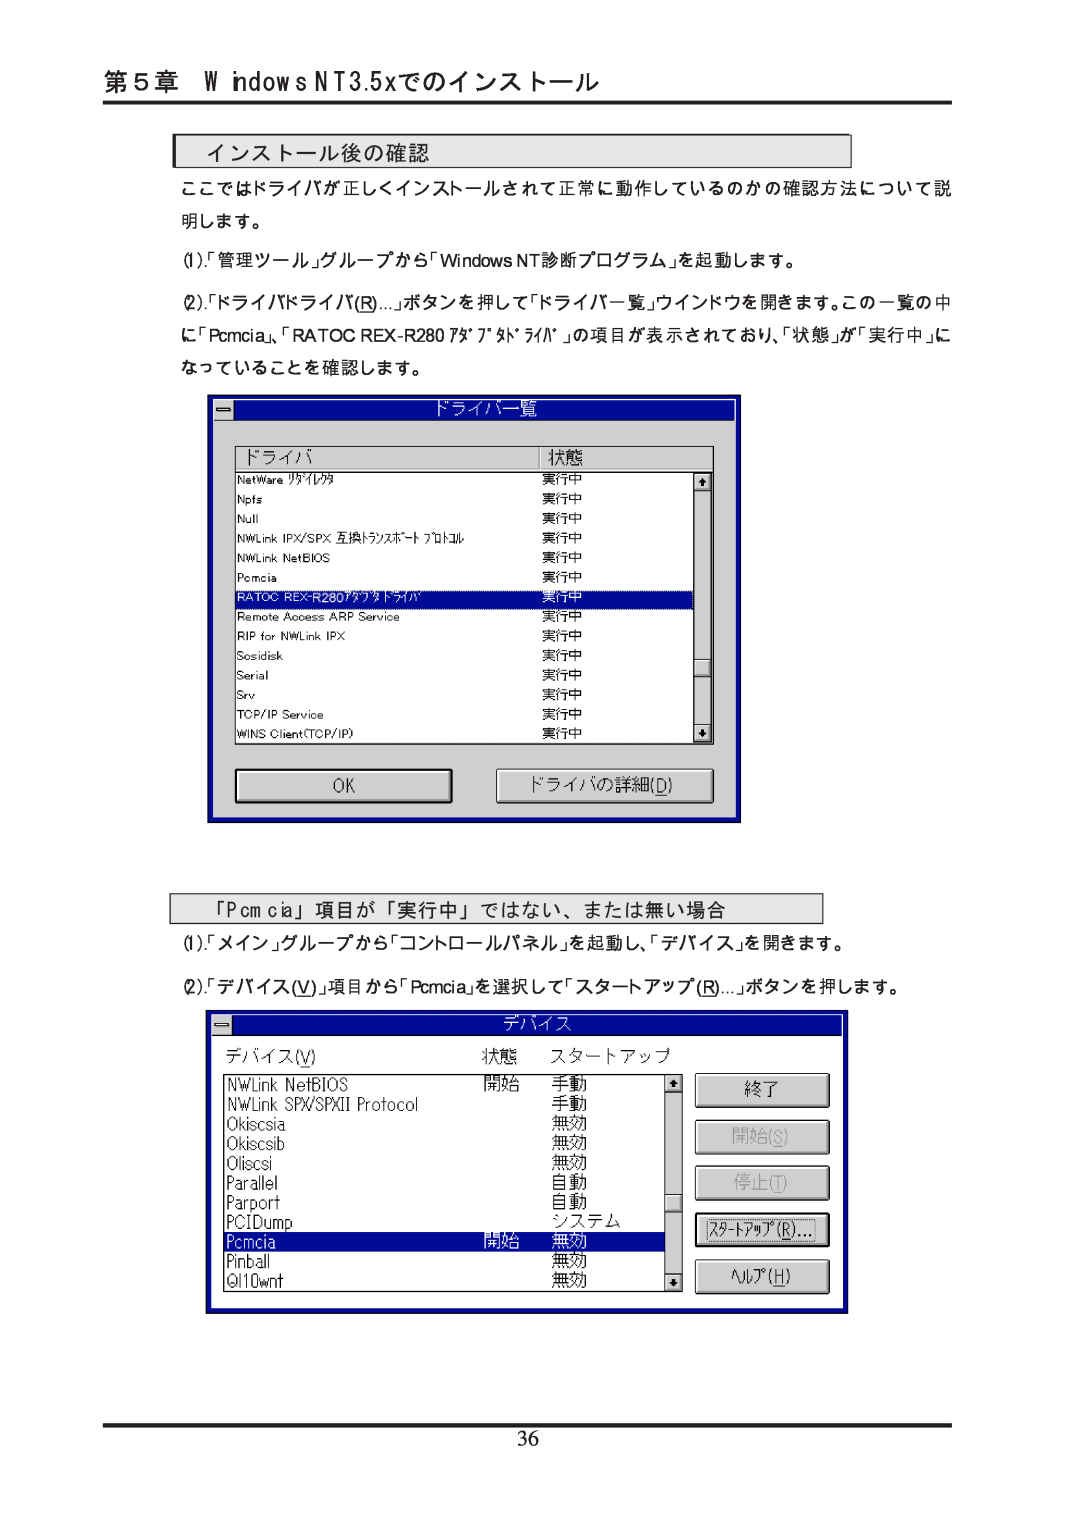 Ratoc Systems REX-R280 manual インストール後の確認, 第５章 Windows NT3.5xでのインストール, 「Pcmcia」項目が「実行中」ではない、または無い場合 